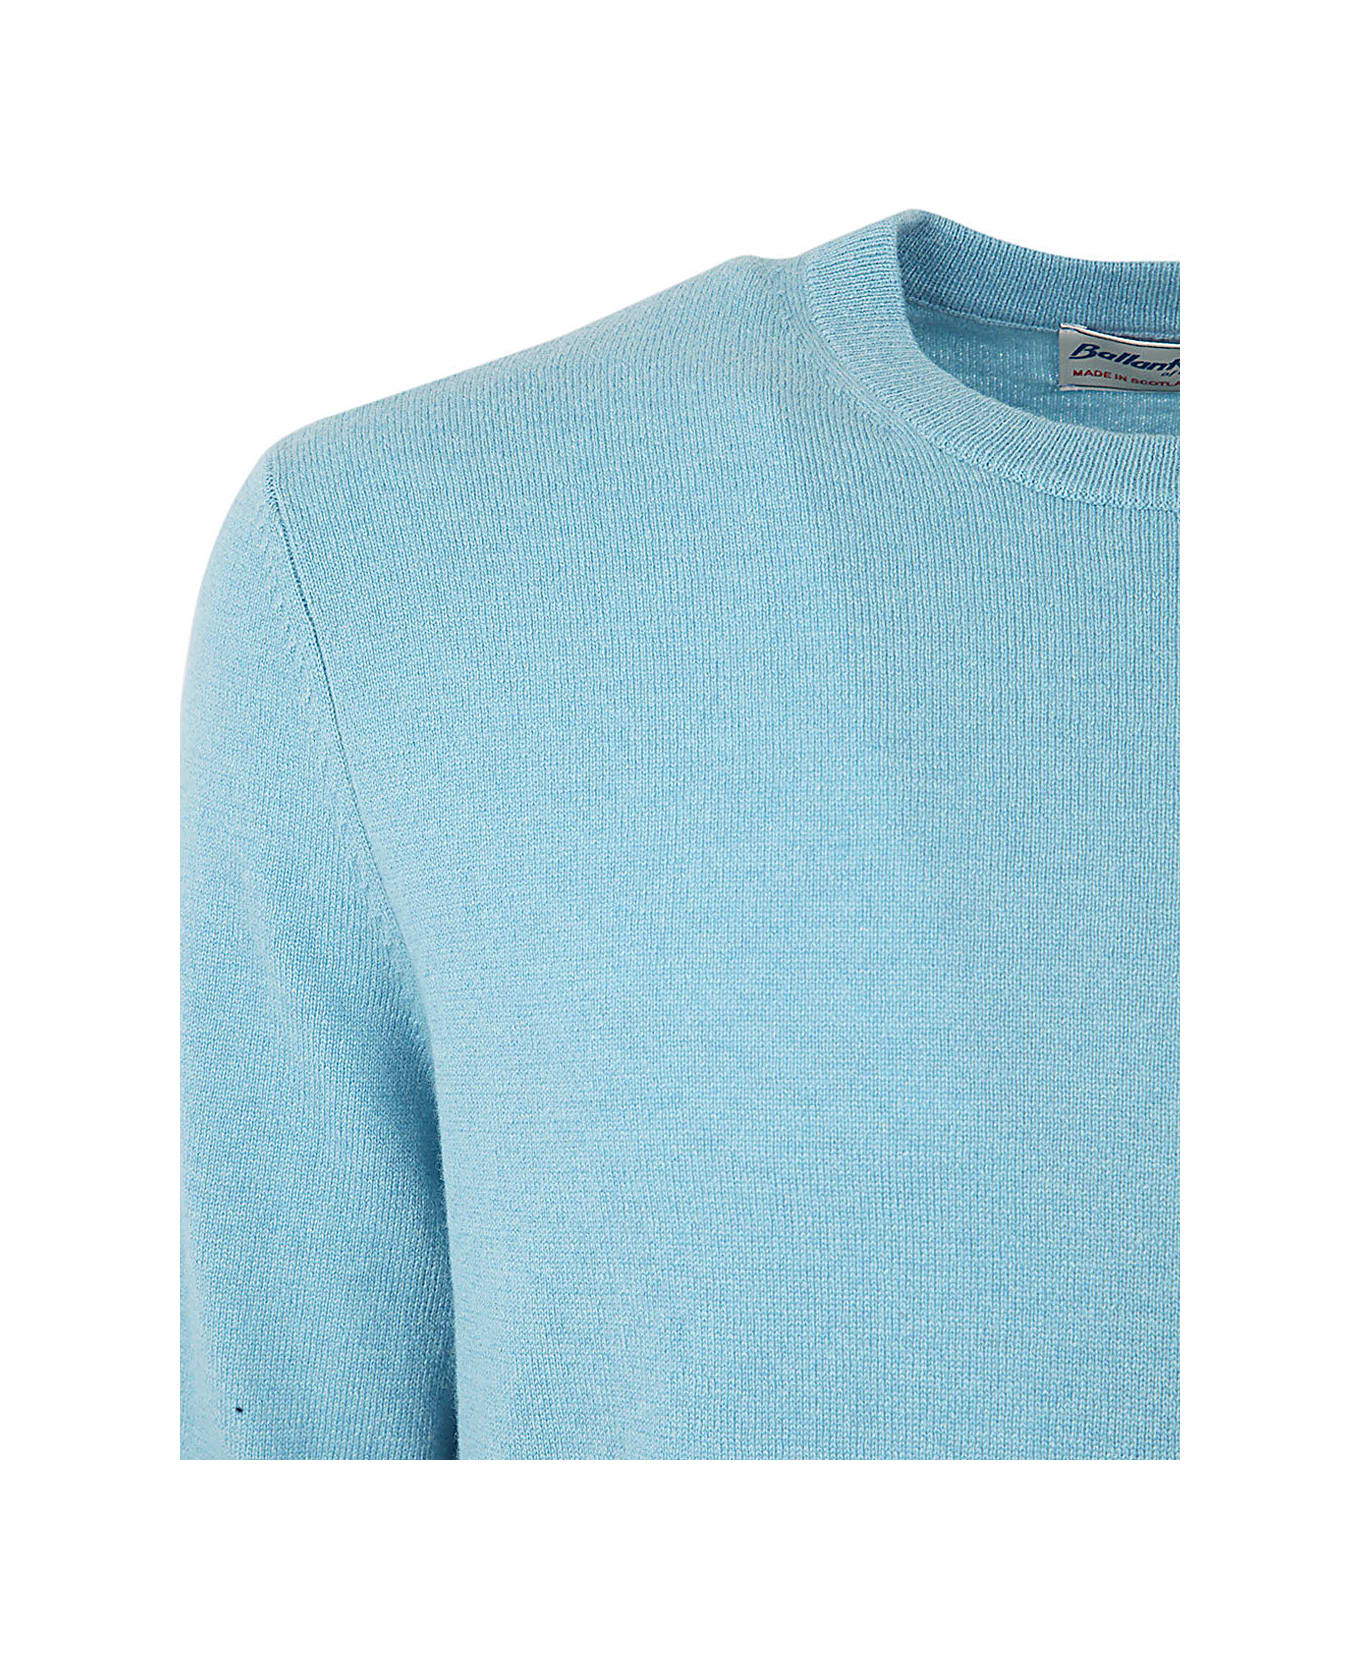 Ballantyne Cashmere Round Neck Pullover - Light Blue ニットウェア